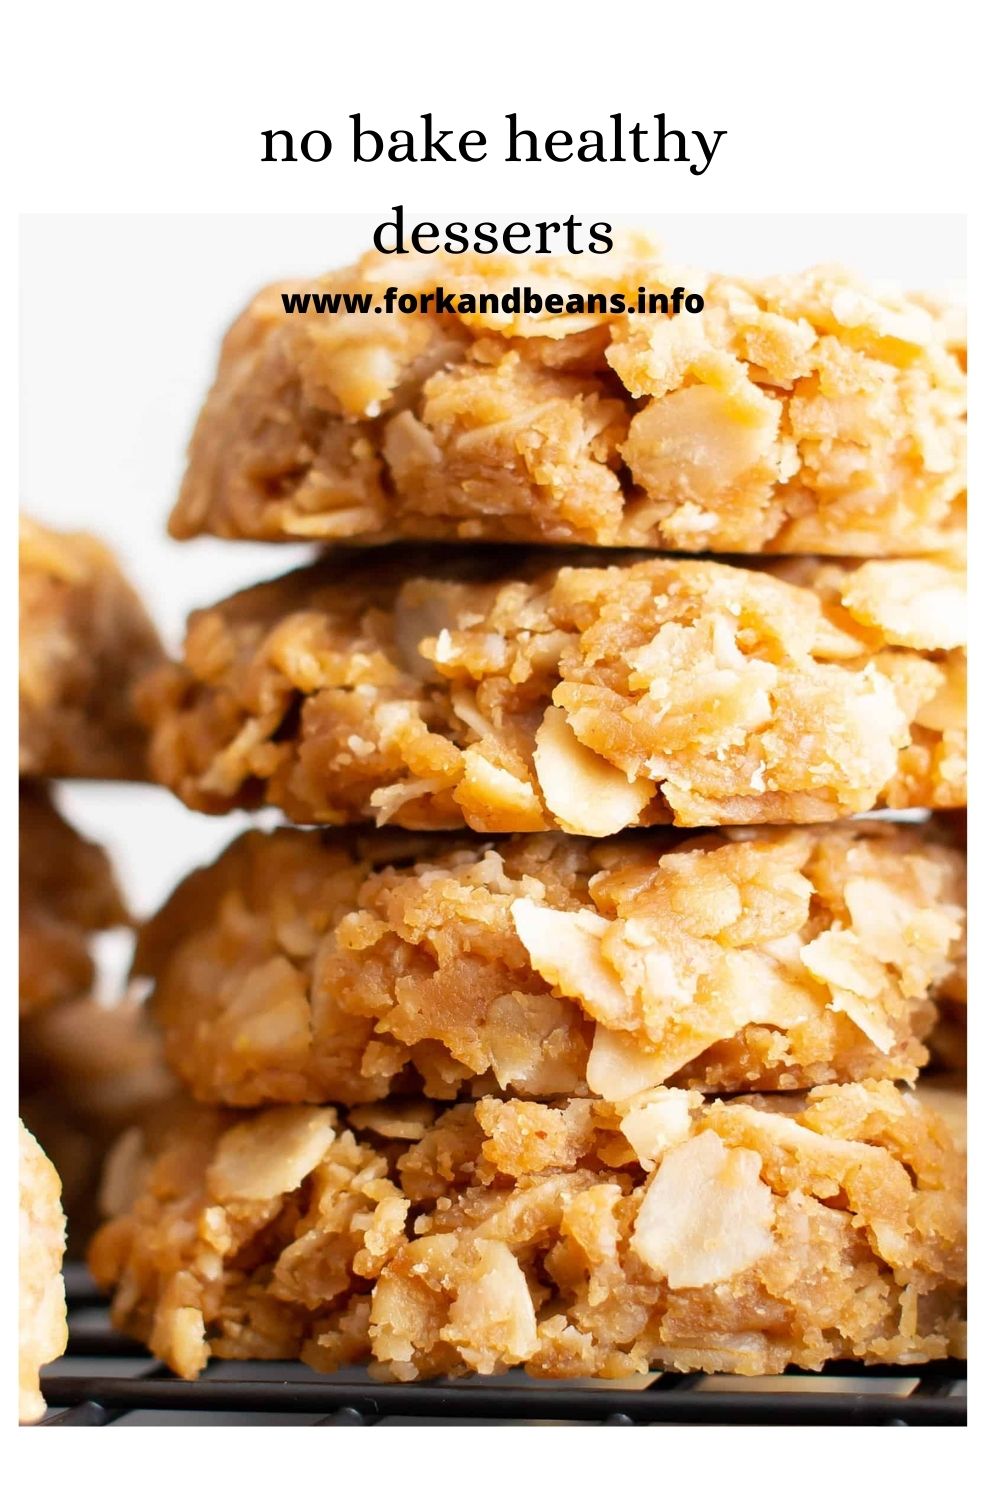 3 Ingredient No Bake Cookies (Vegan) – Peanut Butter Oatmeal Cookies!